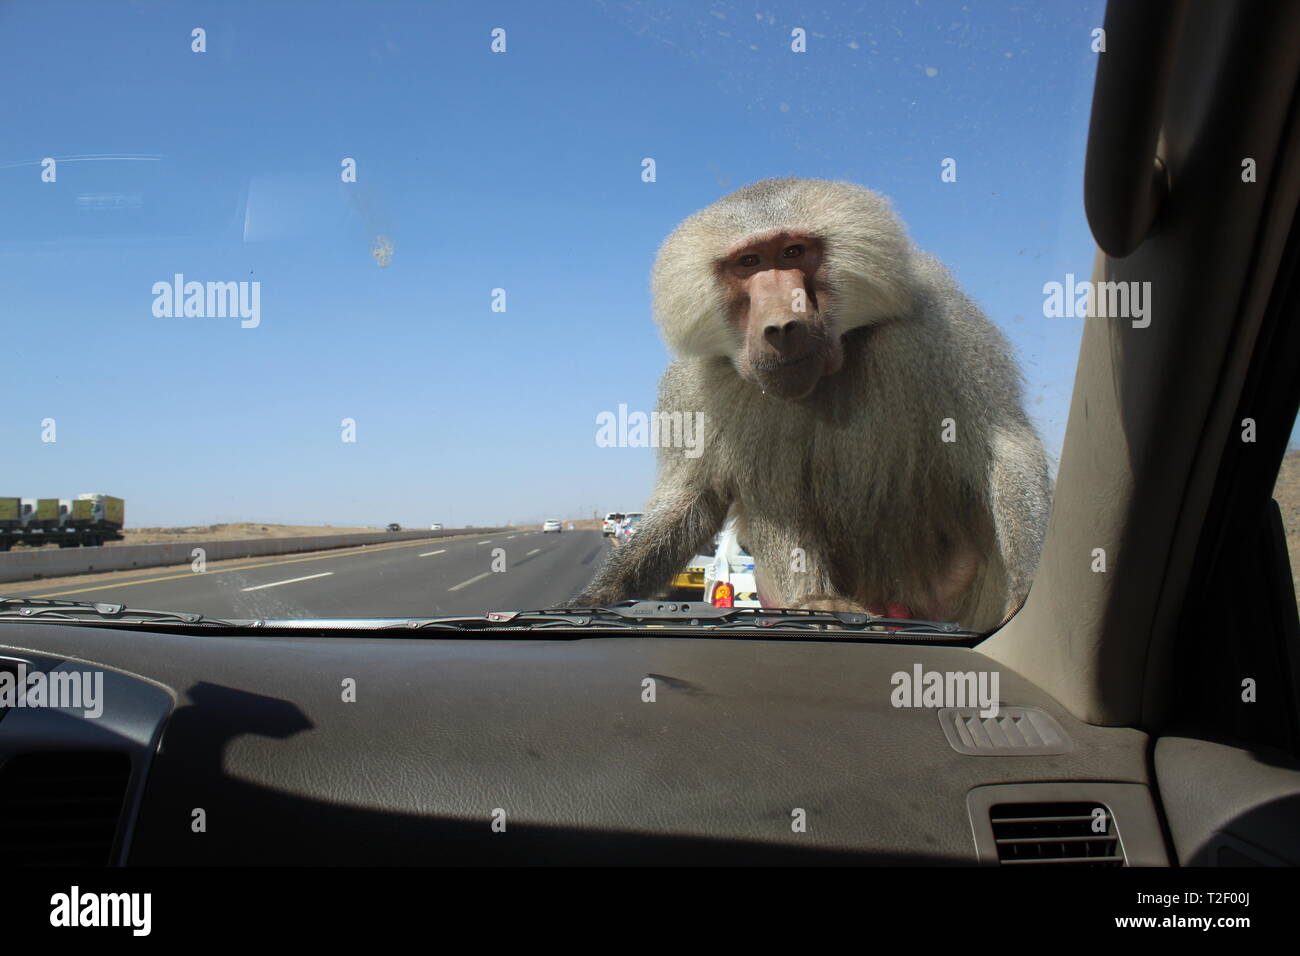 Énorme singe affamé escalade en voiture à la recherche de nourriture à Taif, Arabie Saoudite Banque D'Images